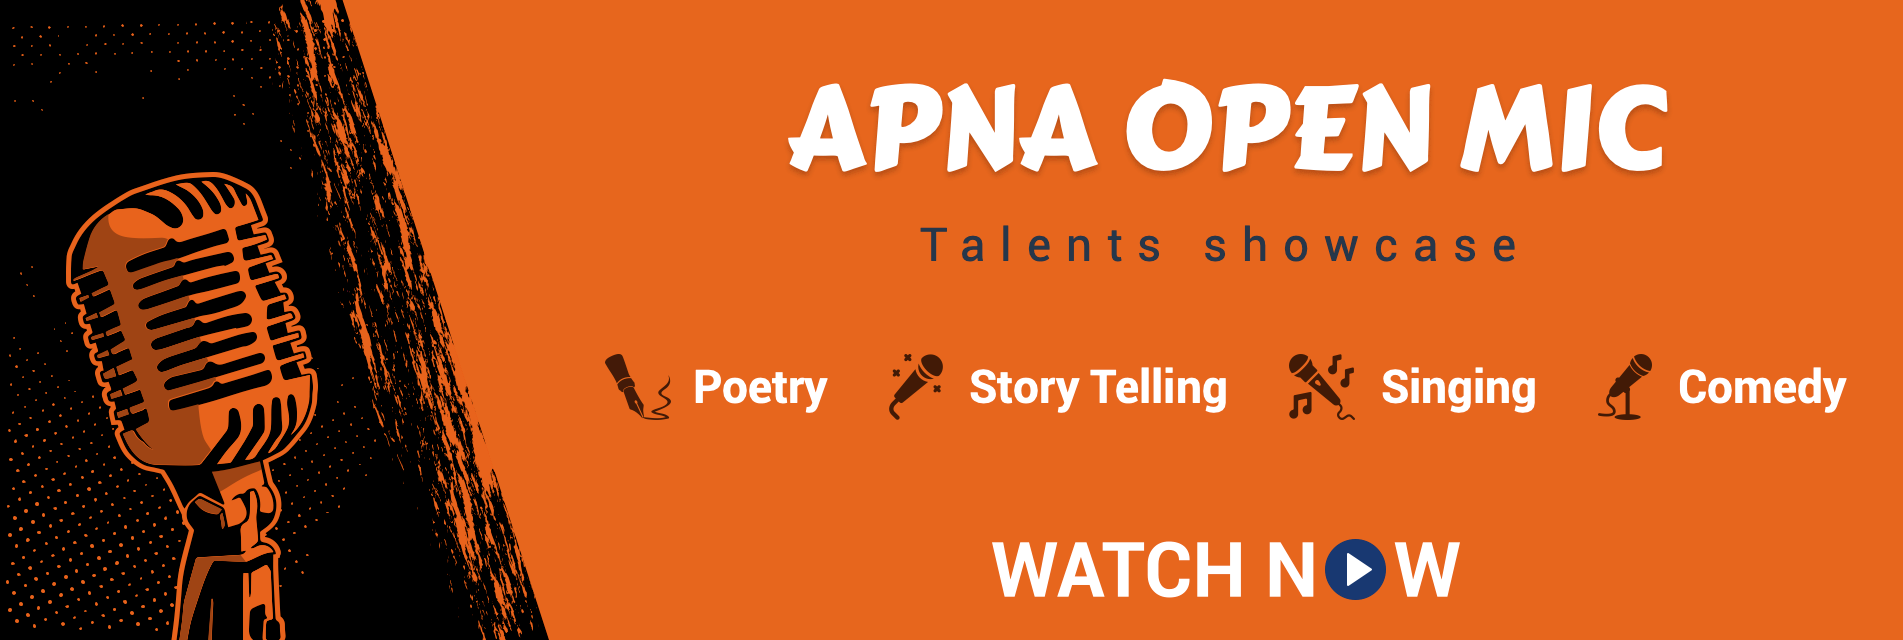 Apna open mic videos on Matrubharti